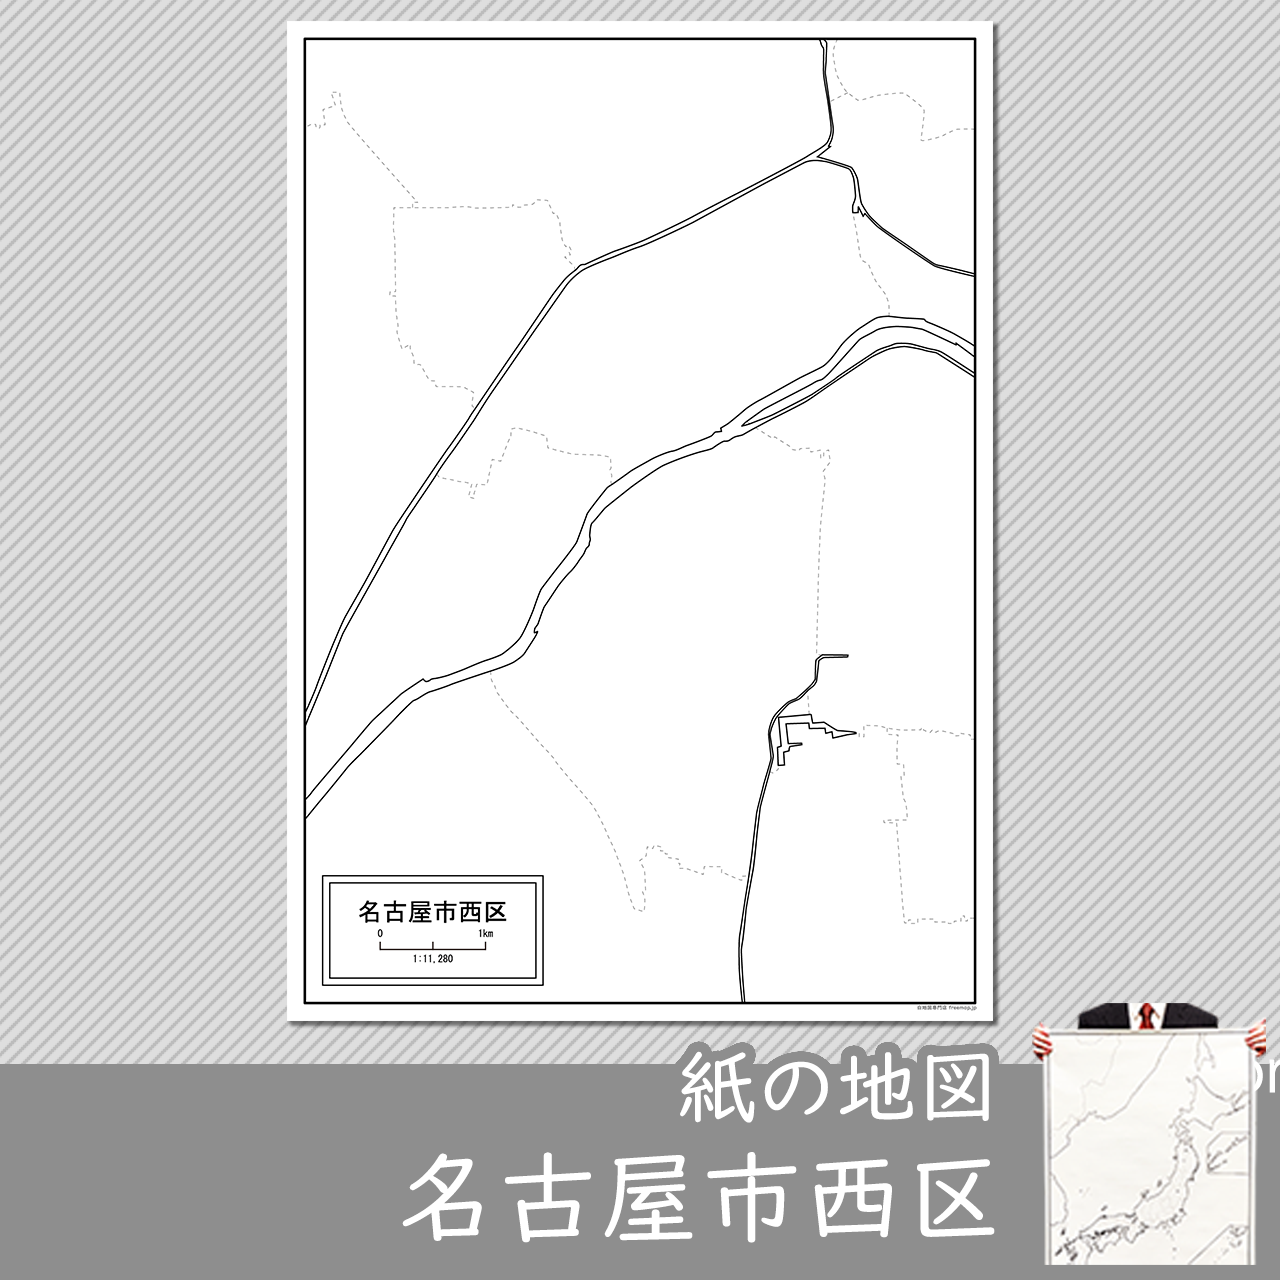 名古屋市西区の紙の白地図のサムネイル